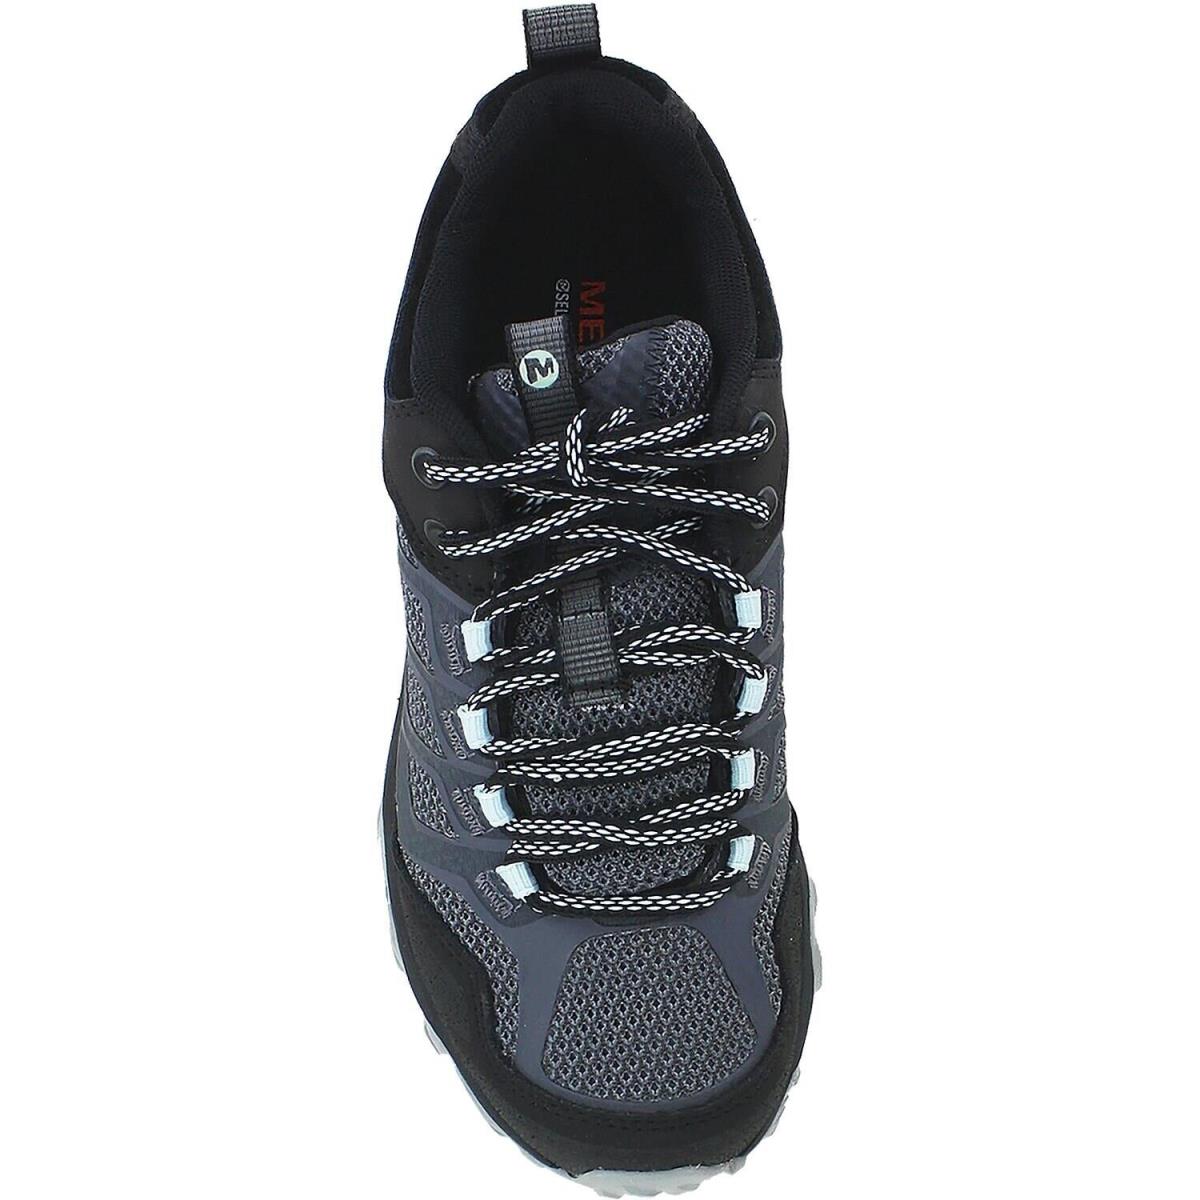 Merrell shoes Moab FST - Granite Black 0